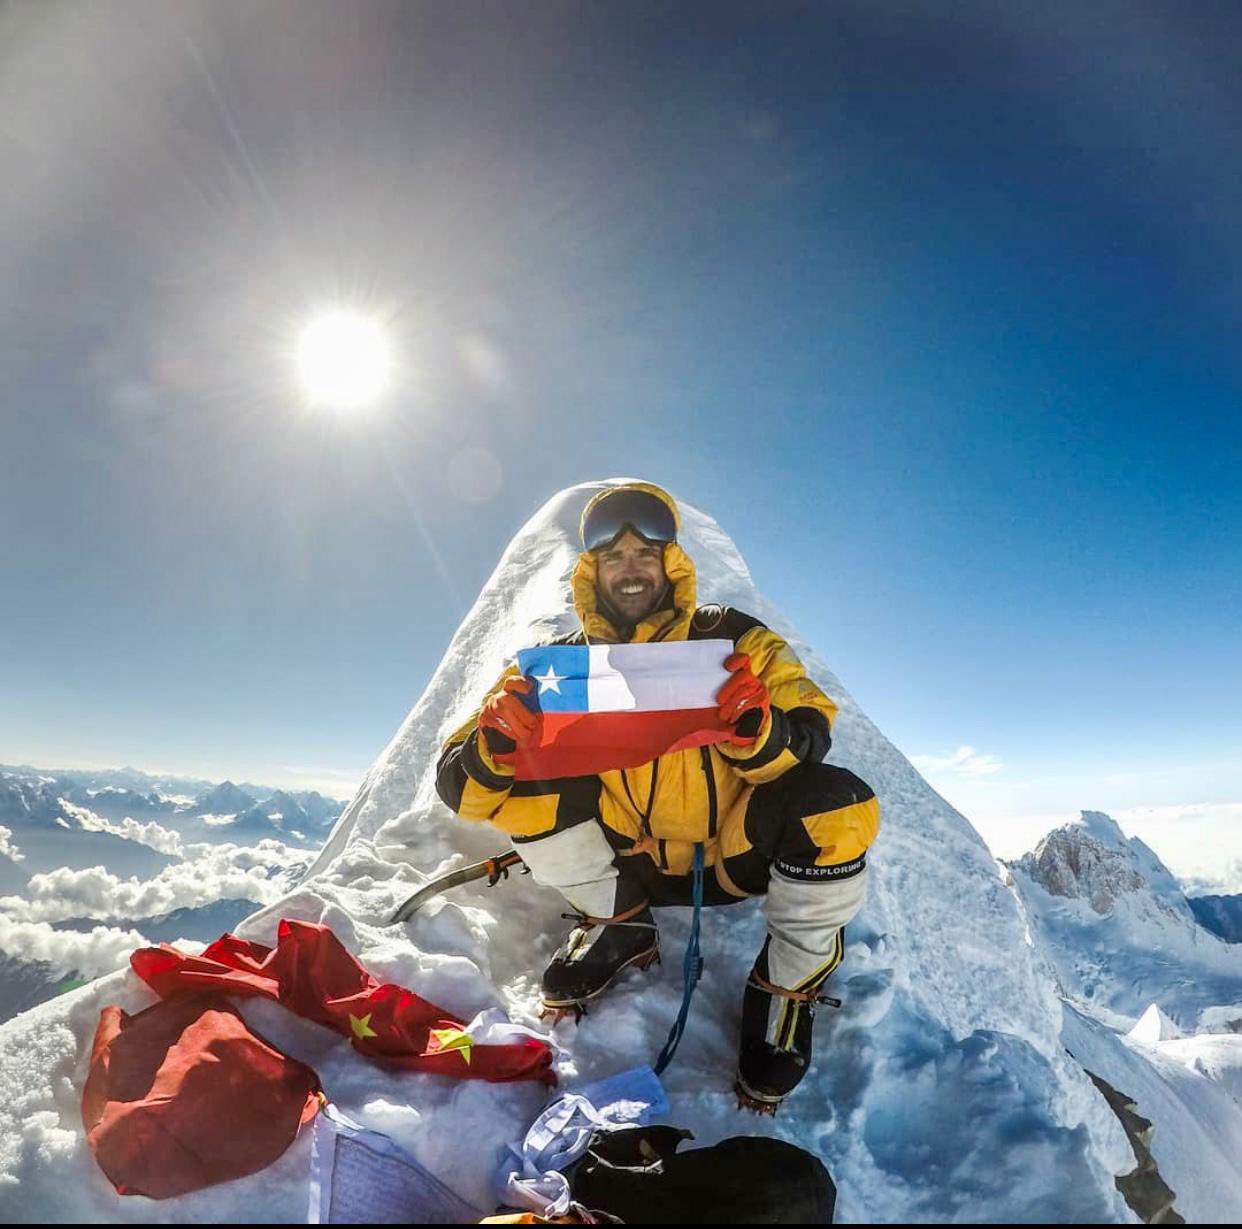  Expedición encuentra cuerpo del desaparecido alpinista chileno Juan Pablo Mohr